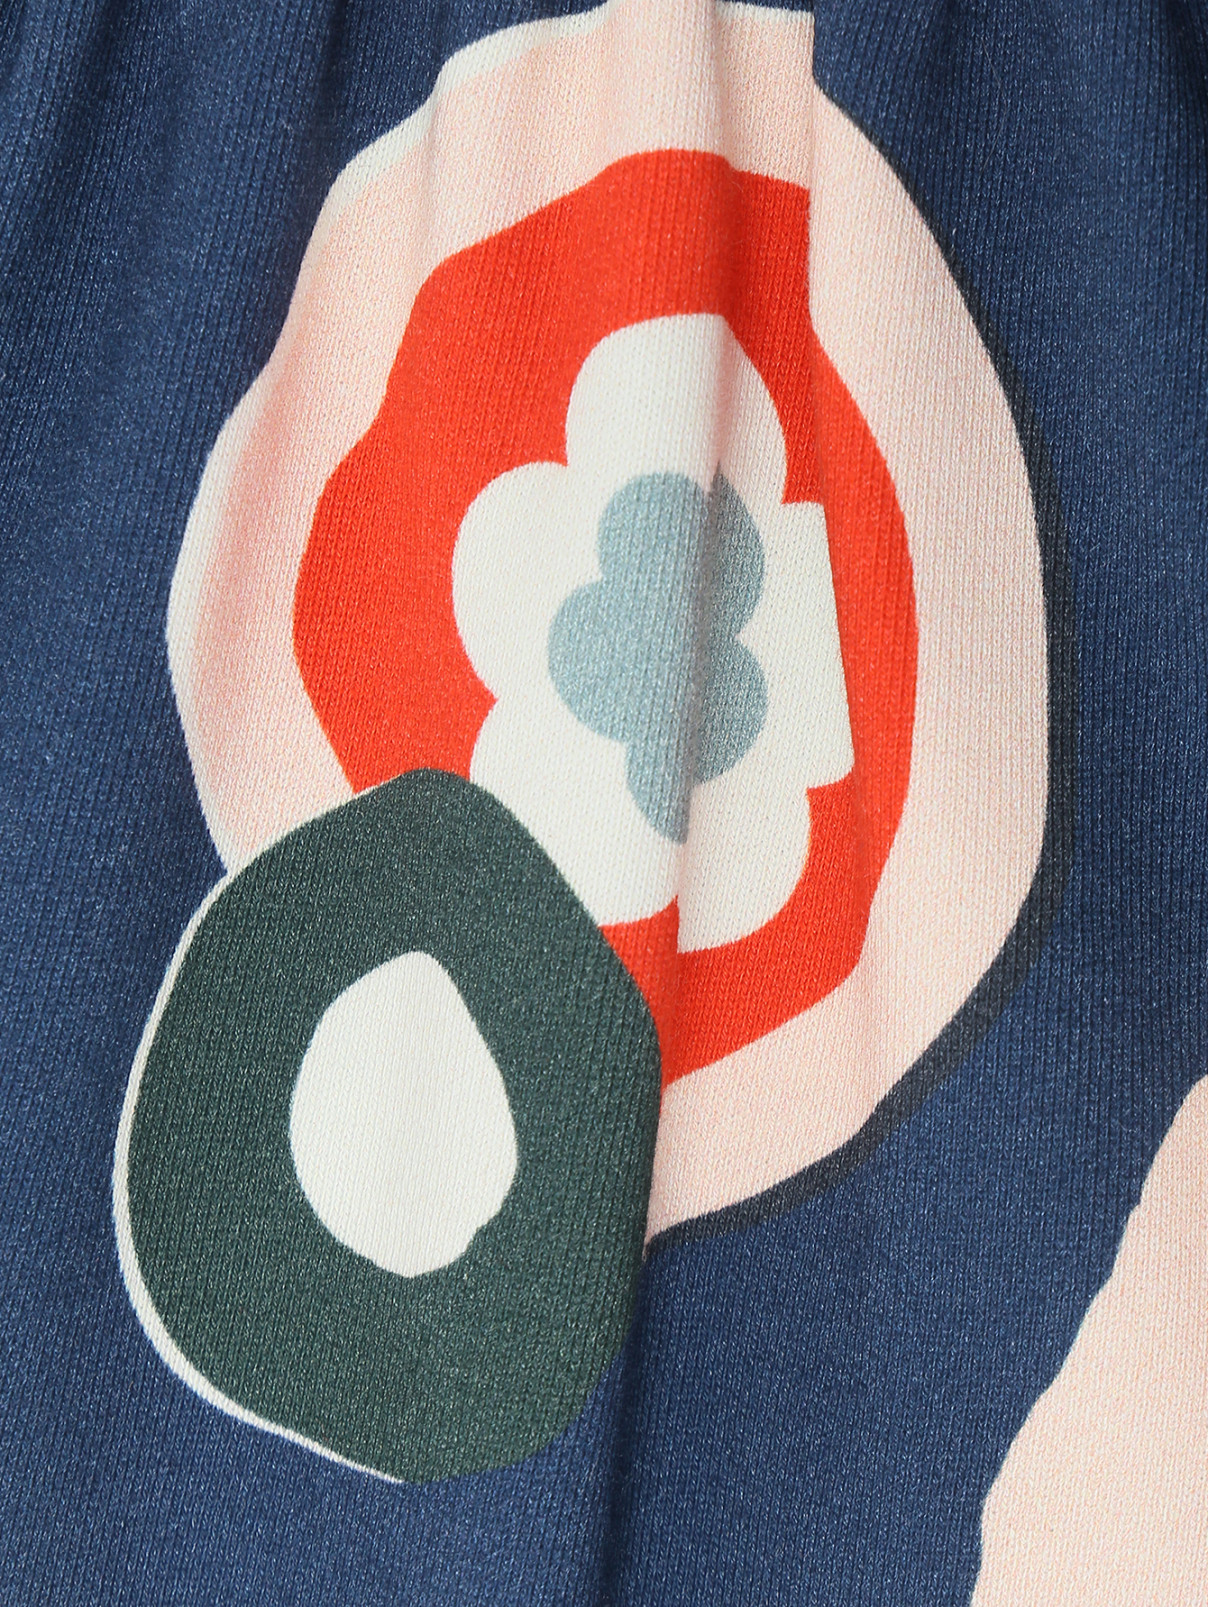 Трикотажная юбка с узором Marni  –  Деталь  – Цвет:  Узор